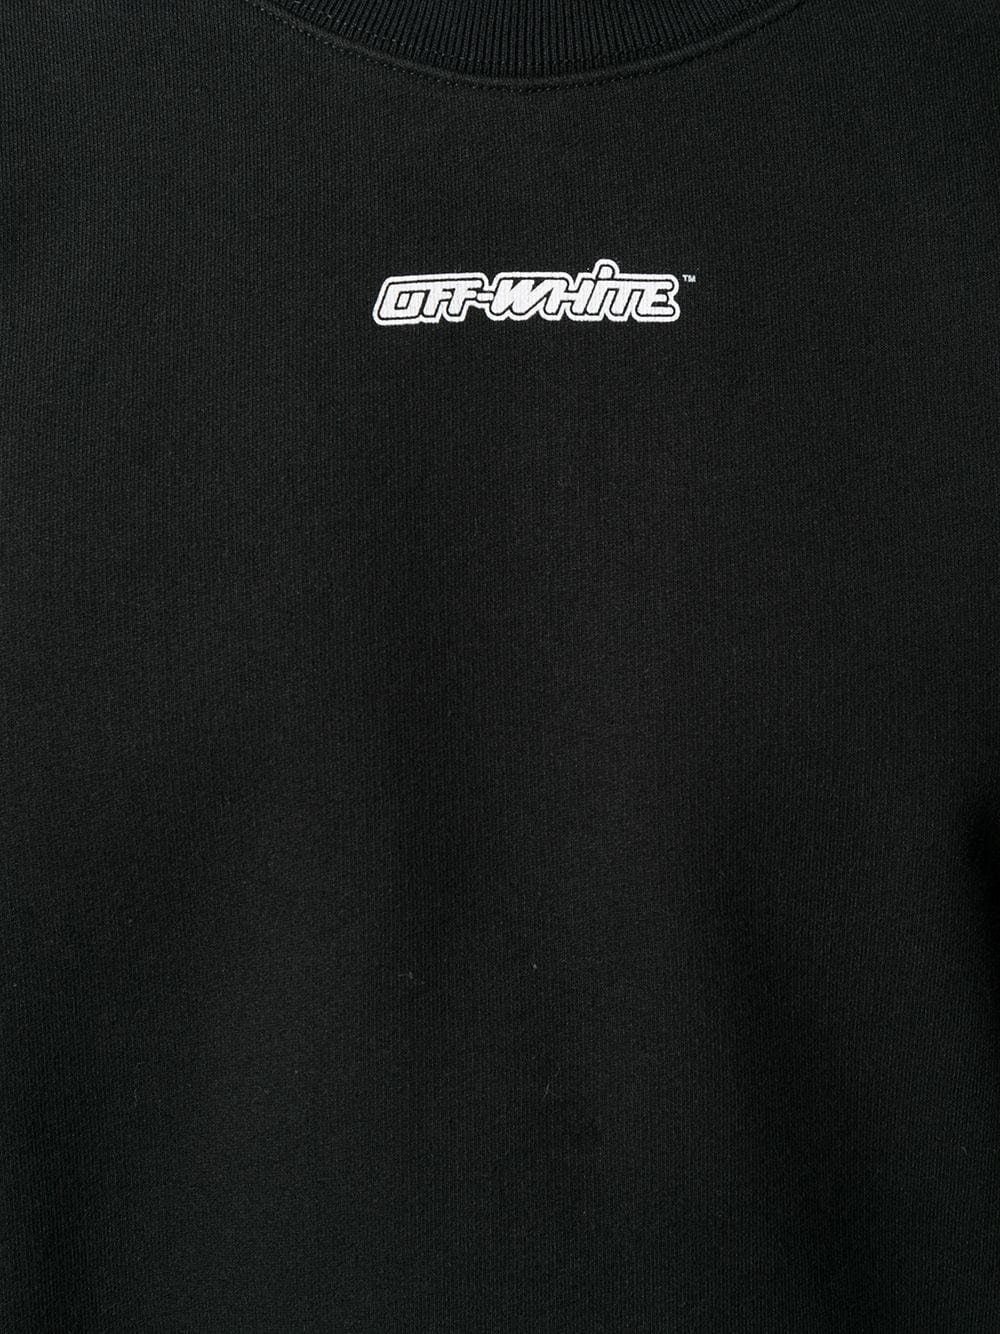 Off-White Marker Arrows Sweatshirt - Farfetch